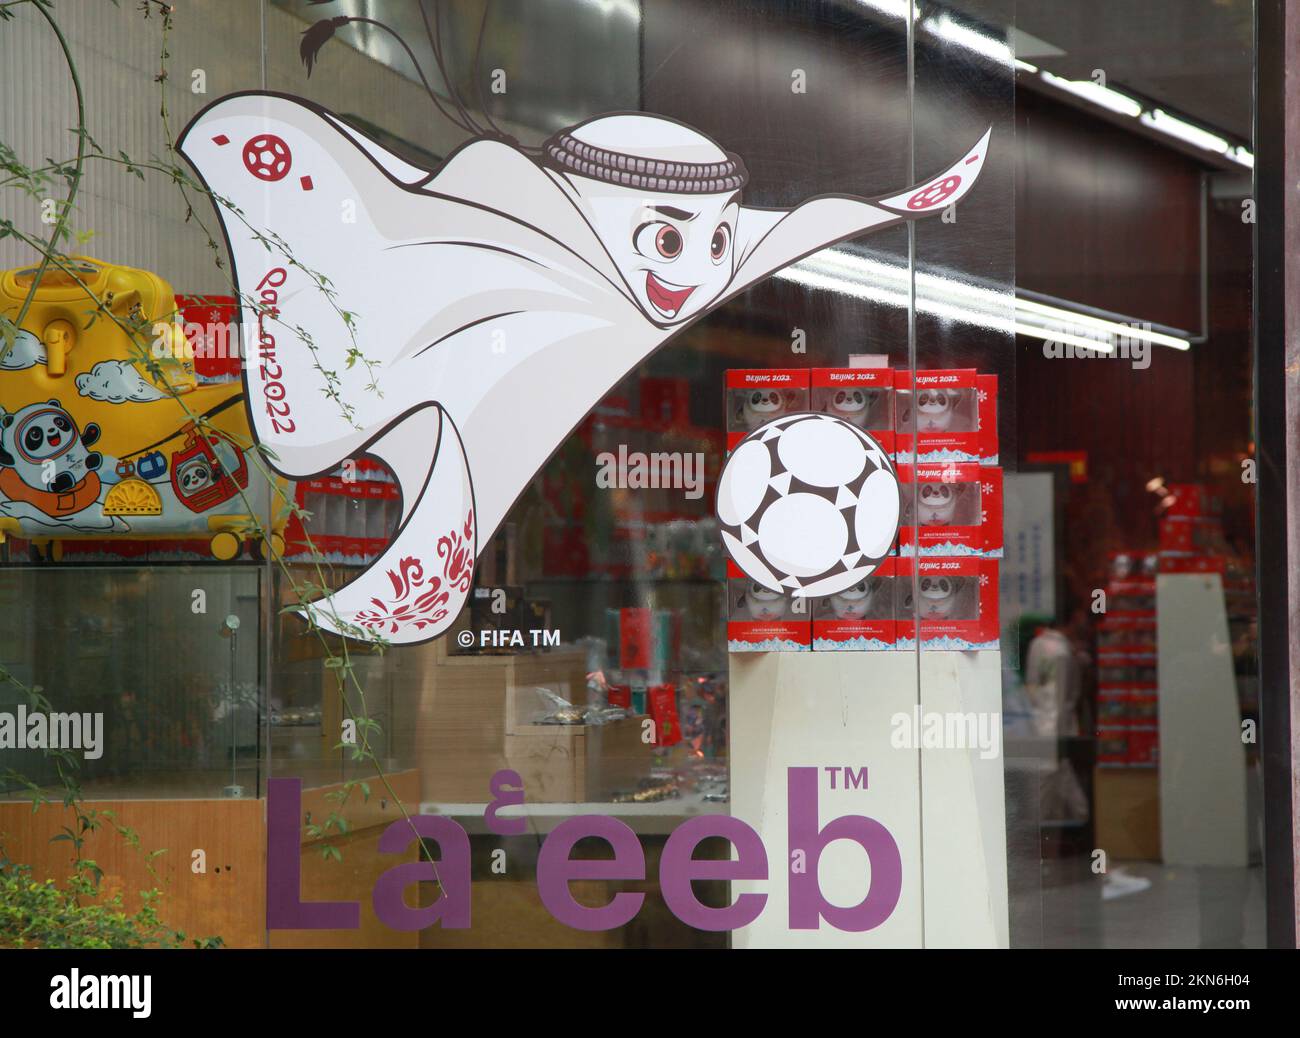 NANJING, CHINE - 27 NOVEMBRE 2022 - Une variété de produits officiellement homologués, y compris des mascottes de la coupe du monde du Qatar 2022, des modèles de la coupe du monde, des ballons de football Banque D'Images